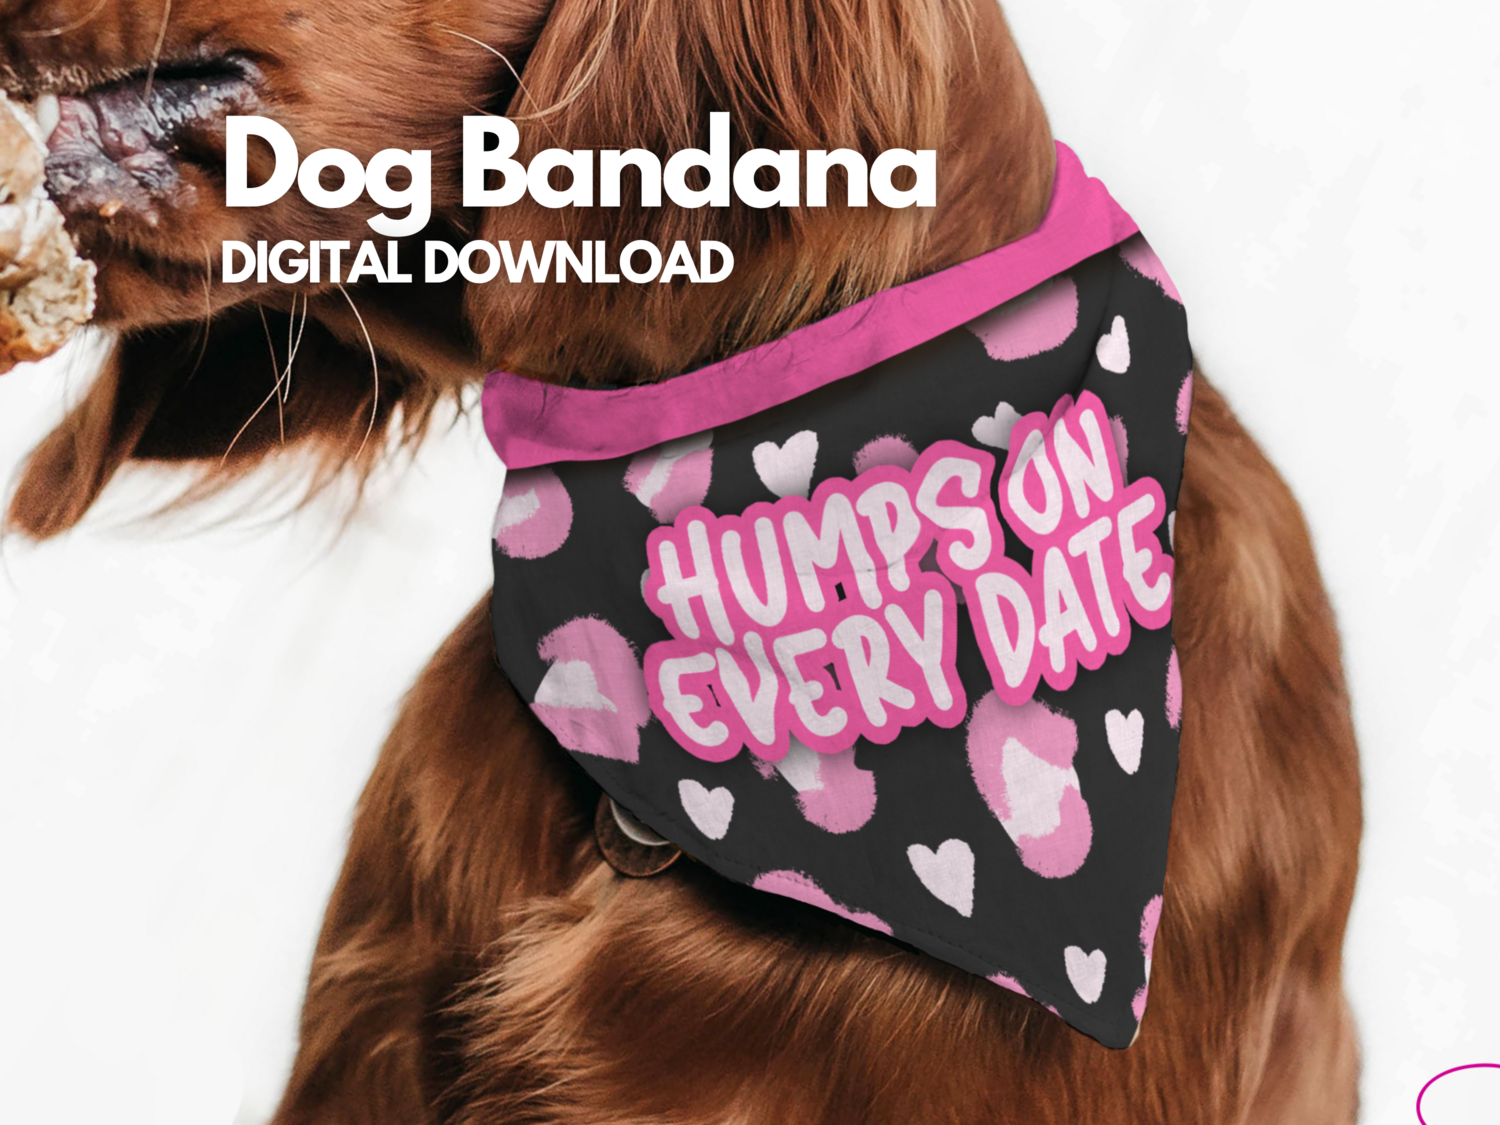 Dog Bandana - Humps on every date